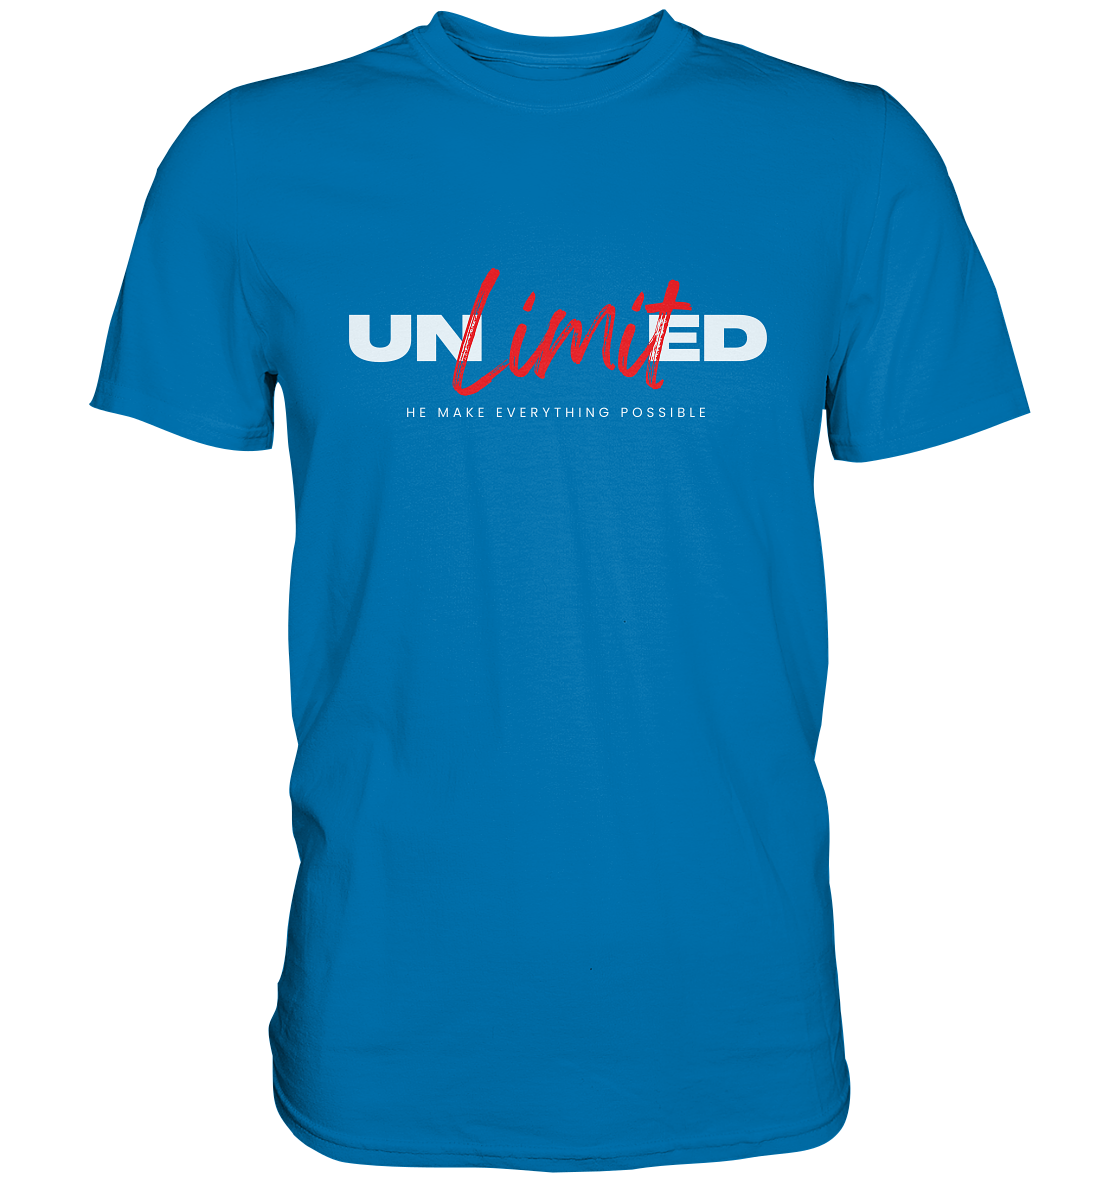 Unbegrenzte Möglichkeiten "Unlimited" - Premium Shirt